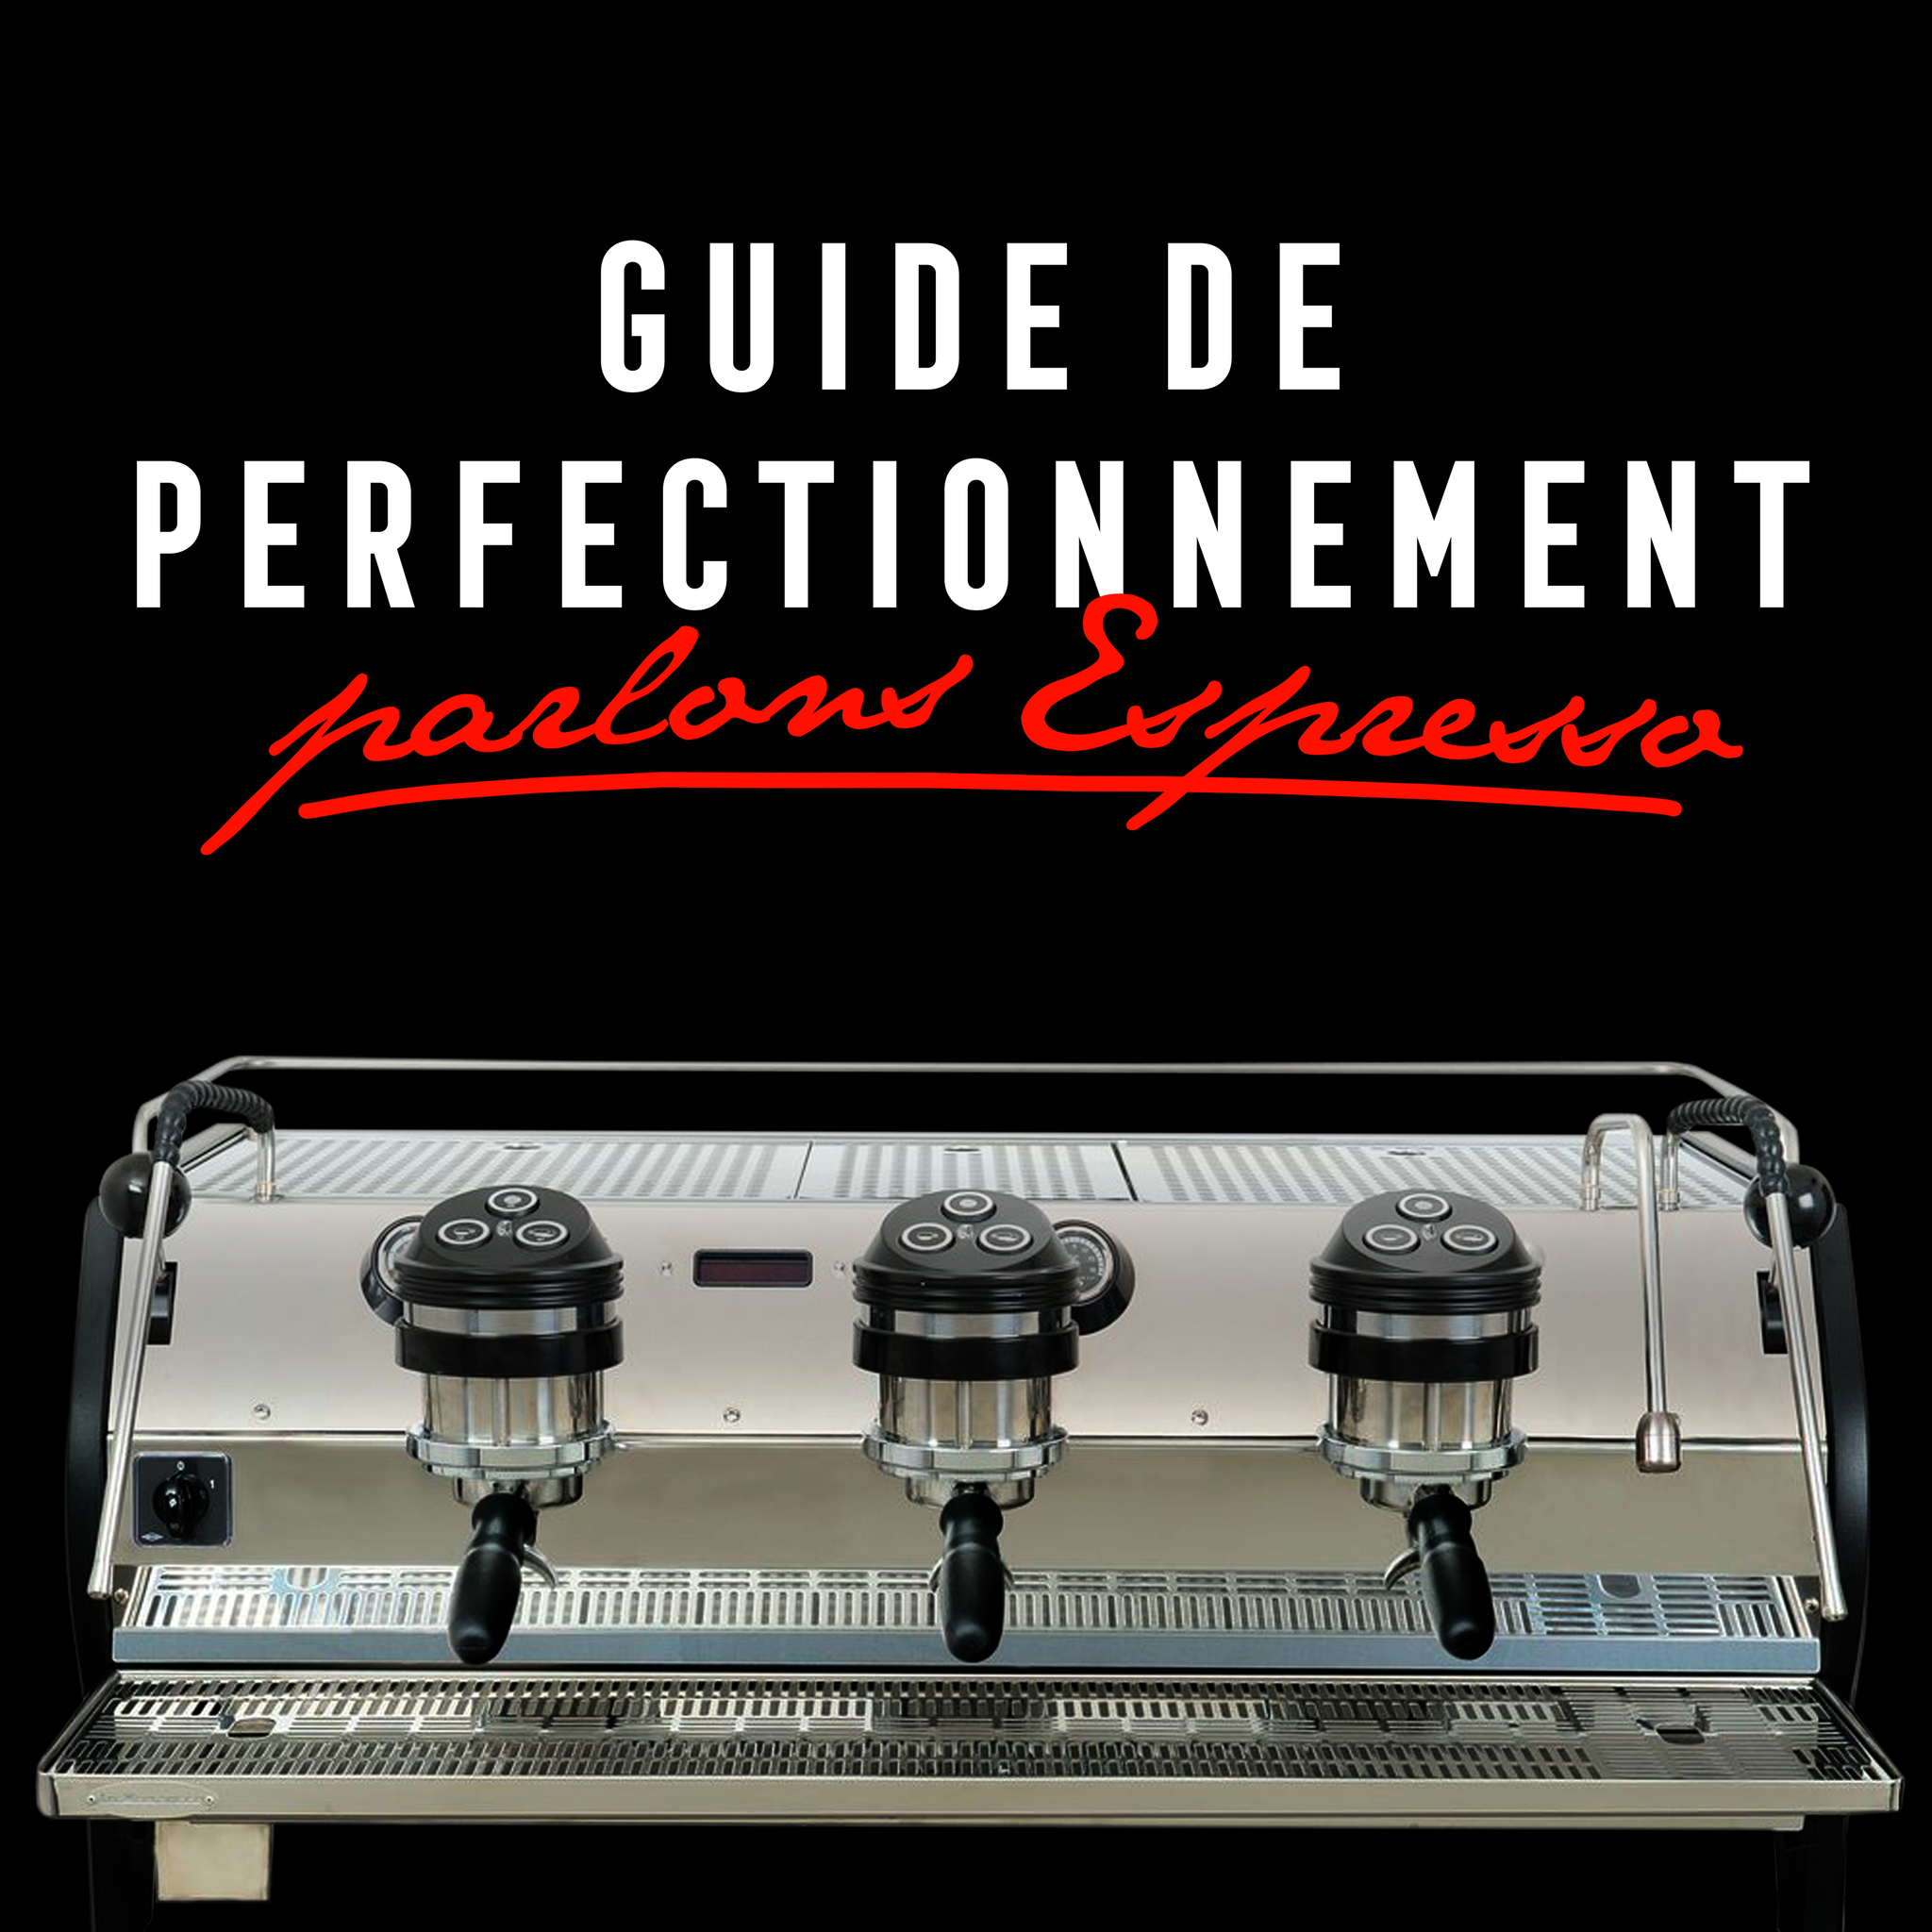 Guide de perfectionnement : parlons espresso